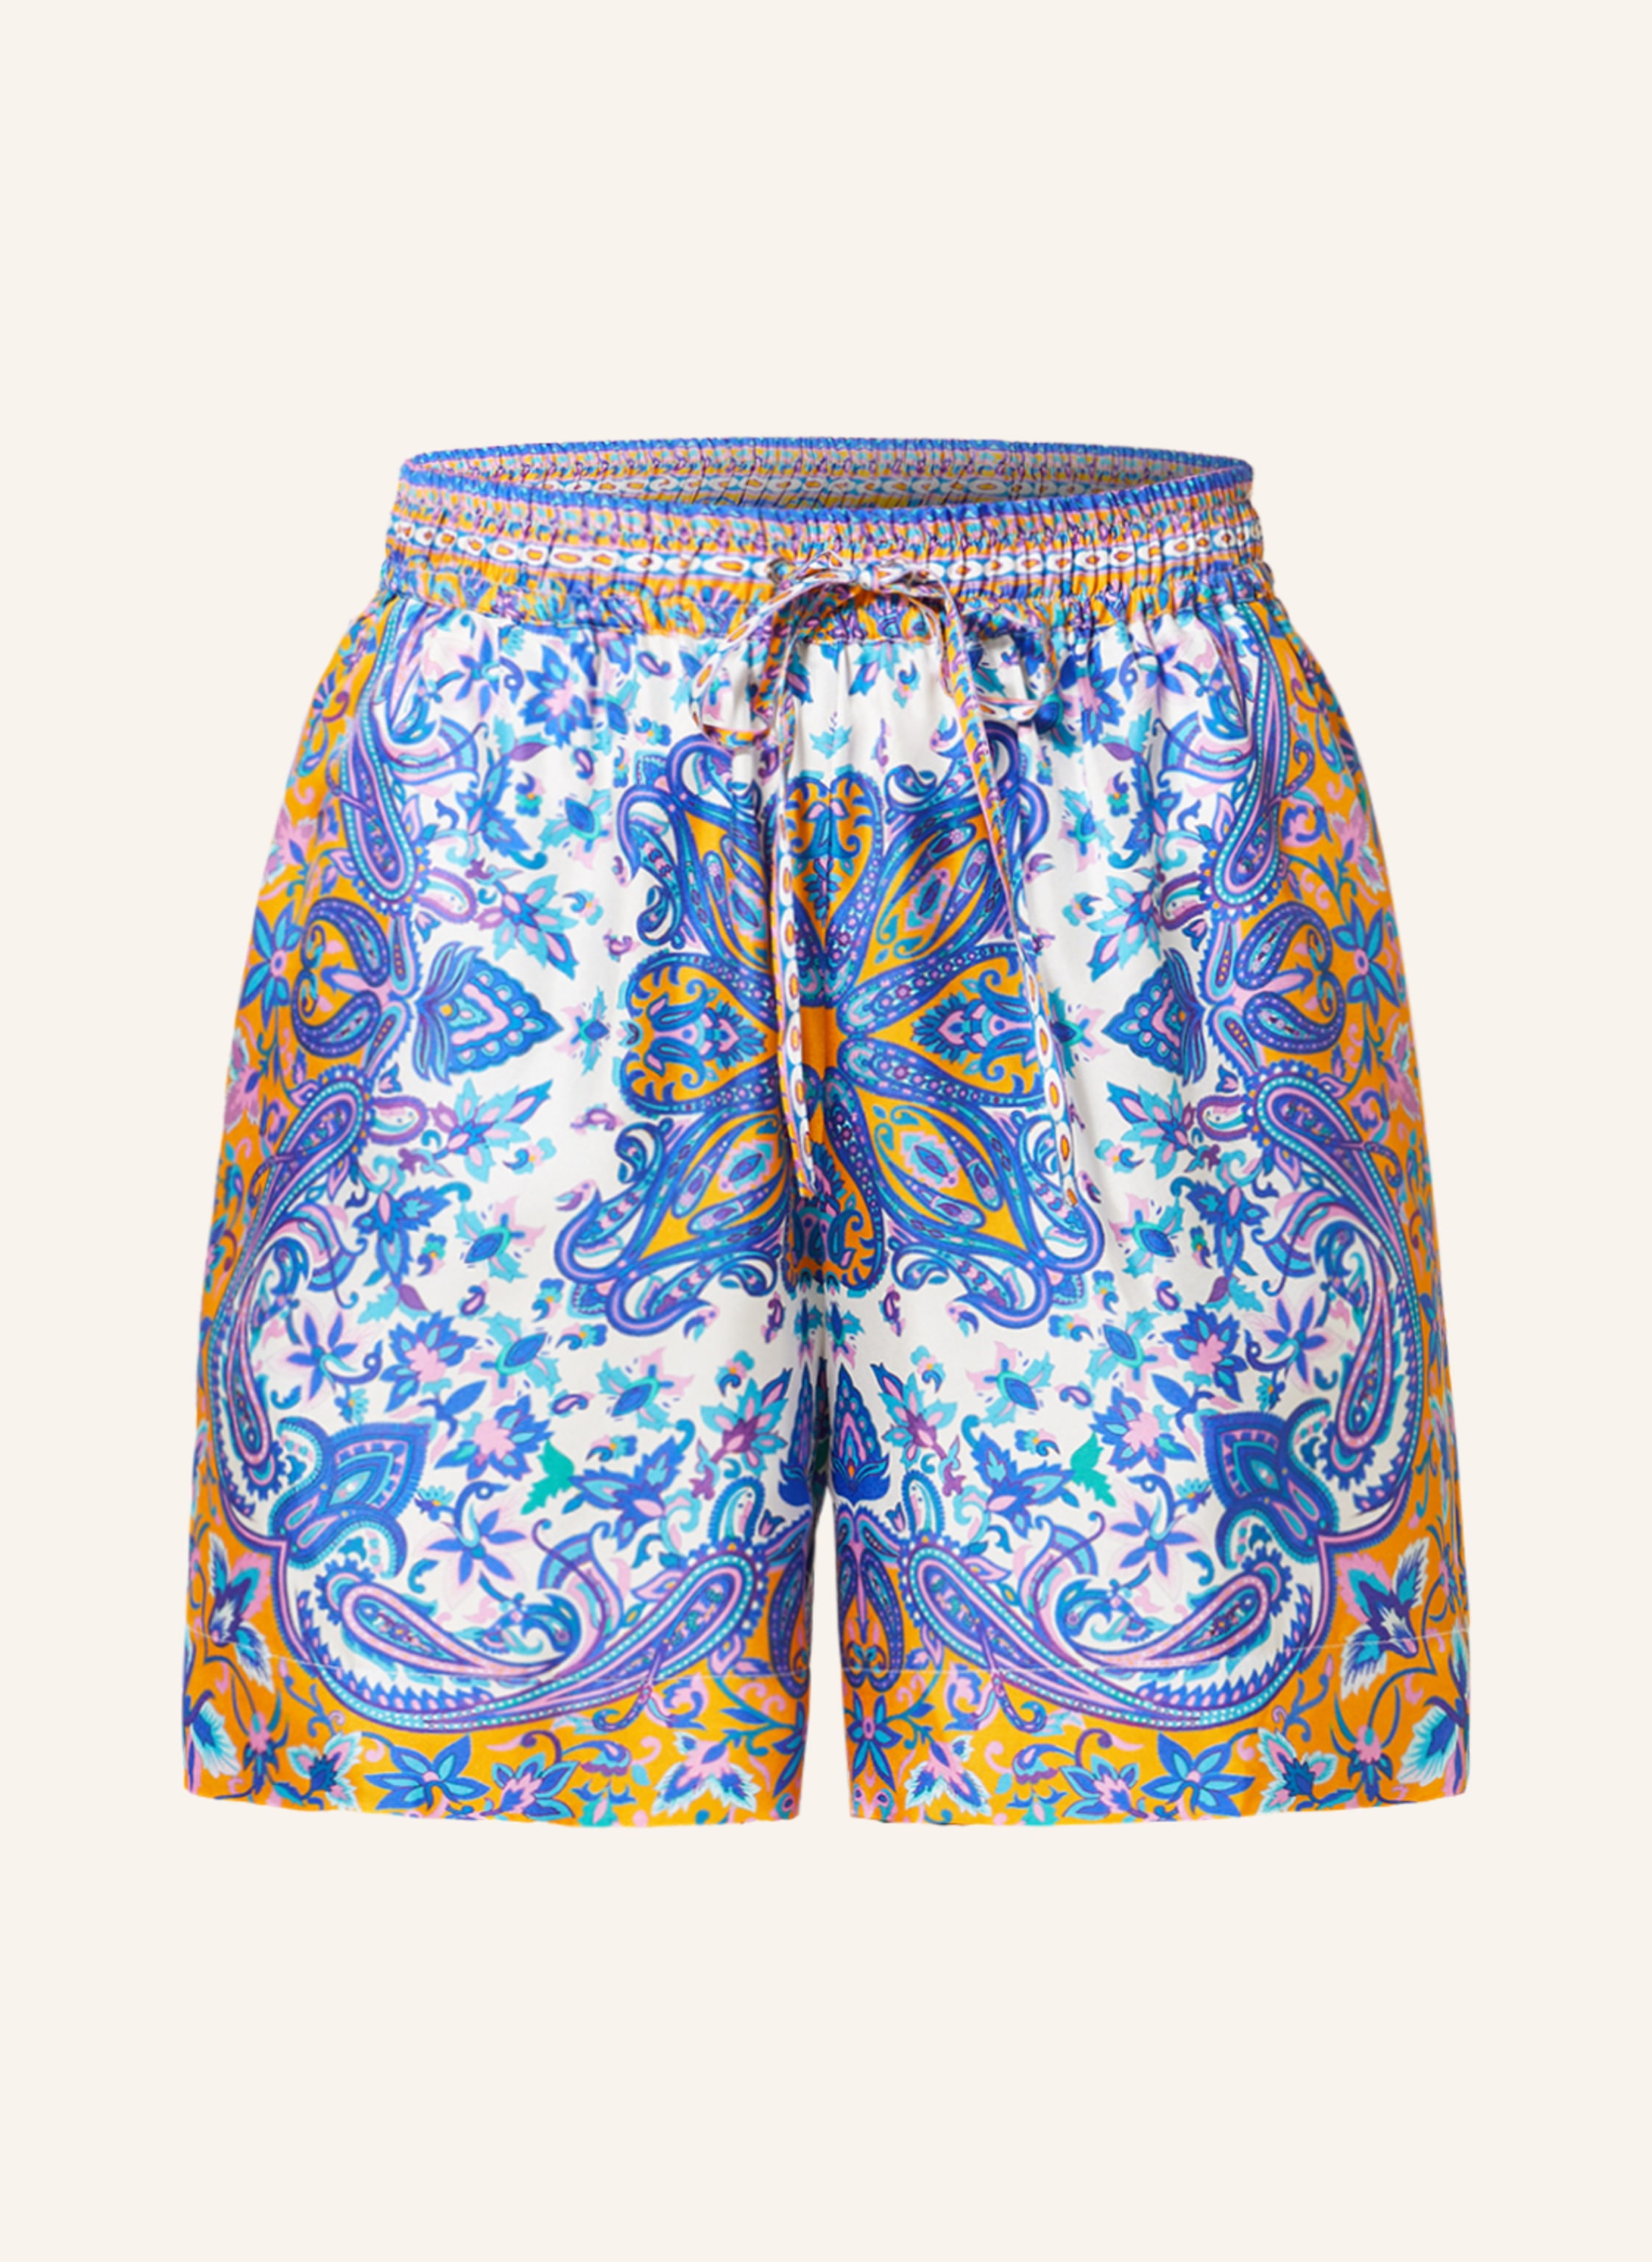 MRS & HUGS Silk shorts in neon orange/ blue/ white | Breuninger